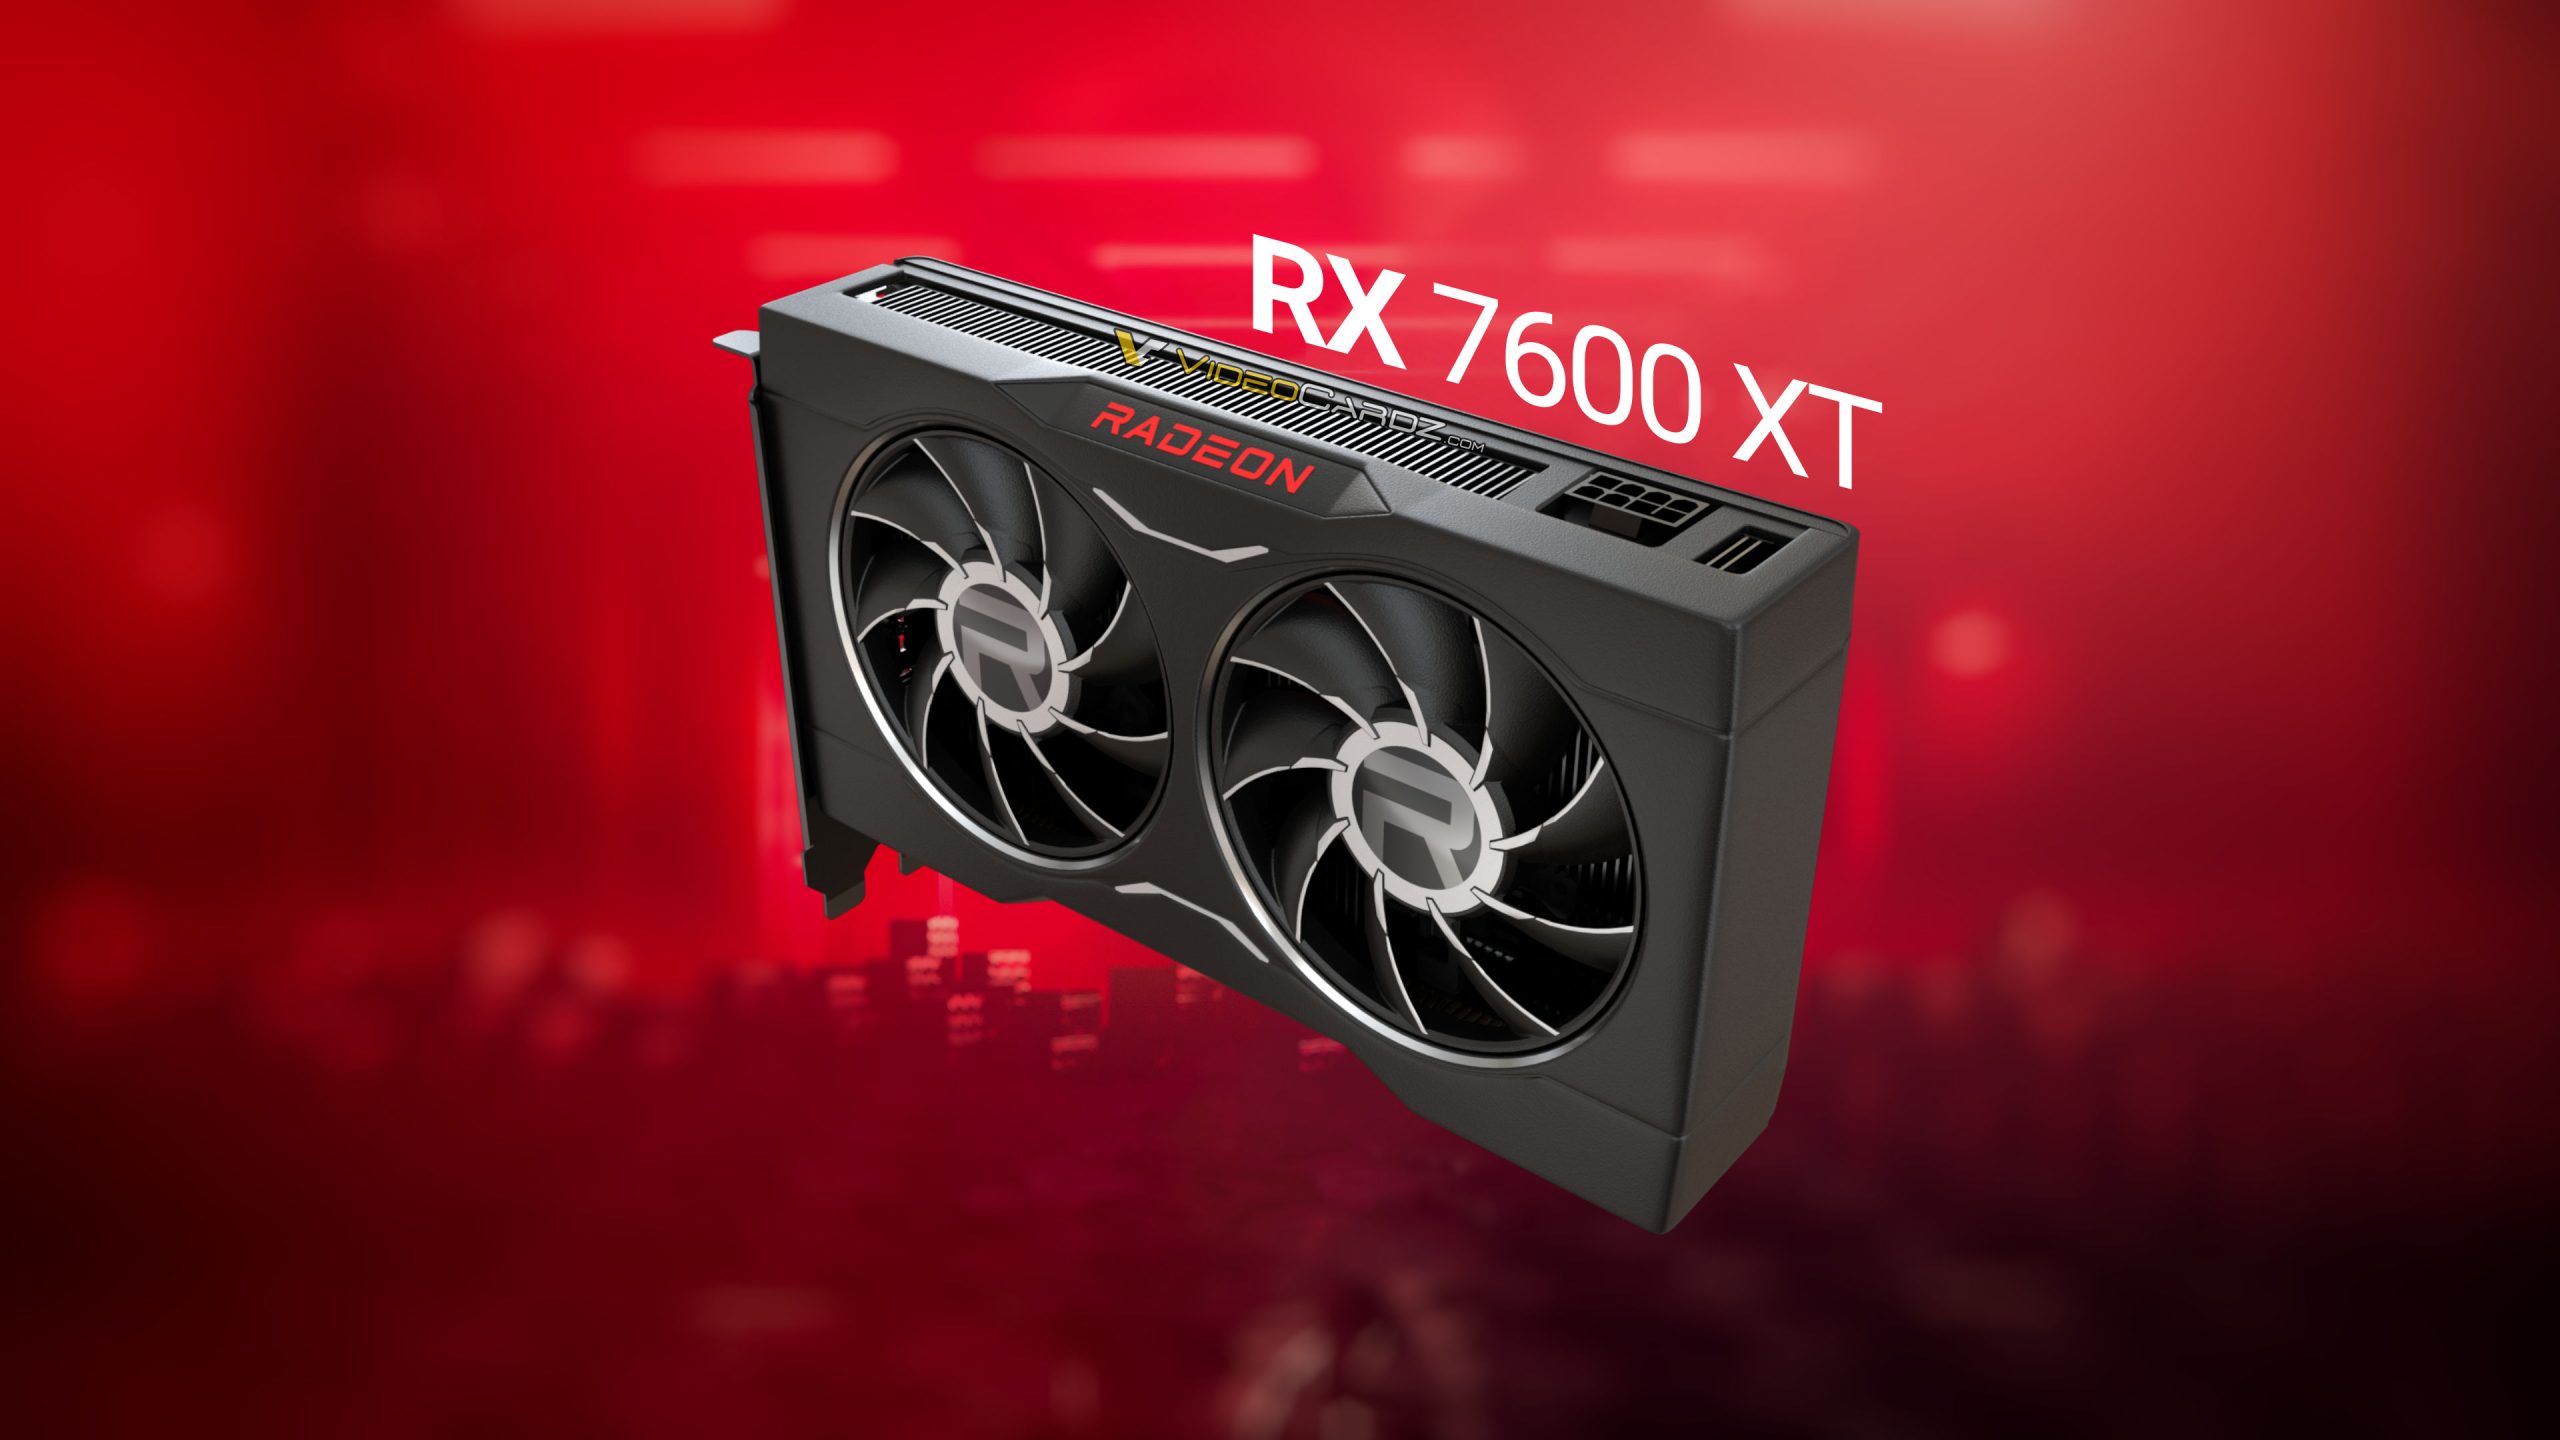 AMD Radeon RX 7600 lộ thông số: 8GB VRAM, giá có thể chỉ từ 249 đến 279 USD